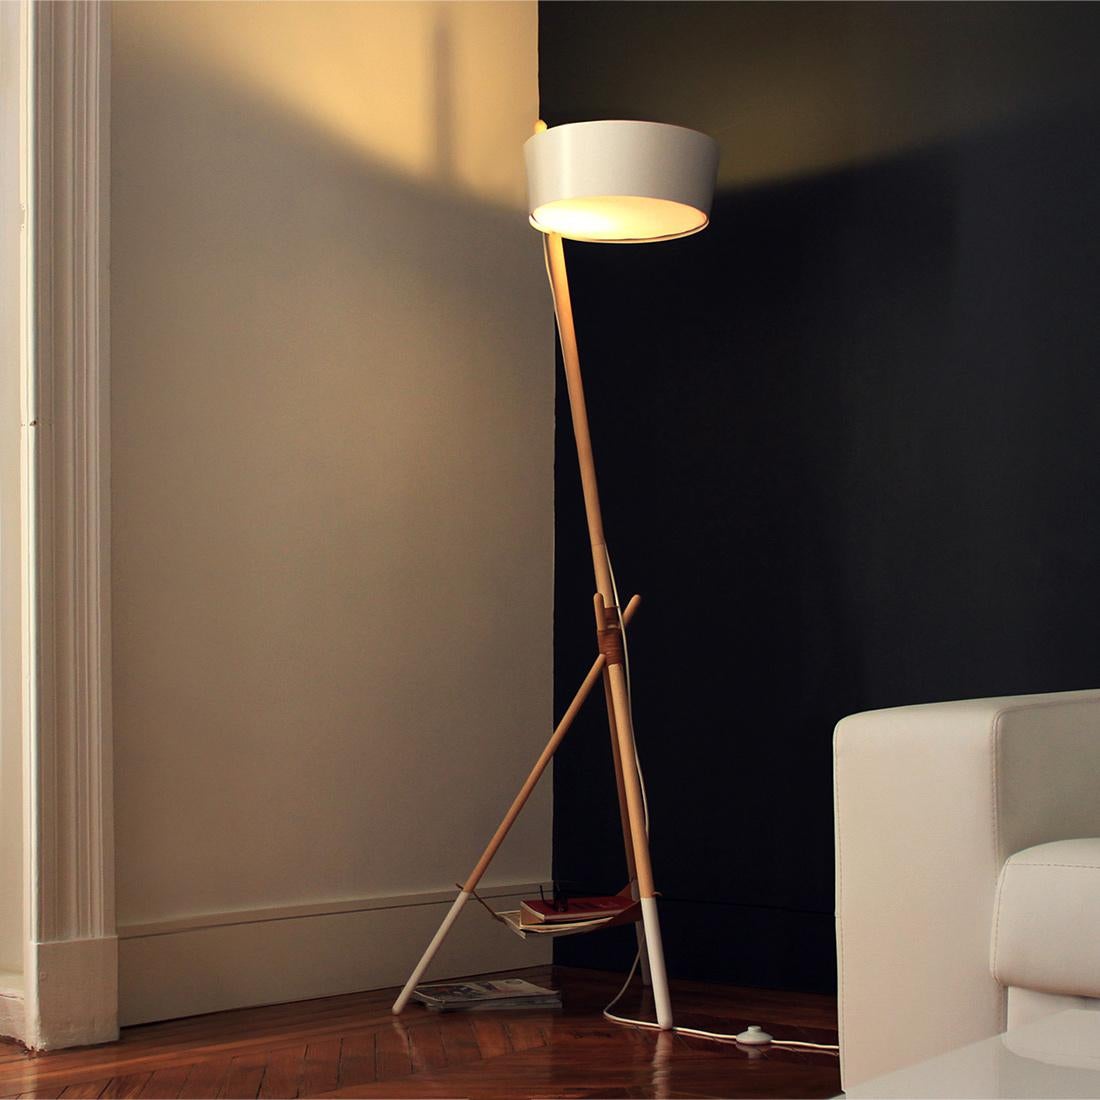 Le plus grand de la famille Ka est un lampadaire sur pied qui rayonne pour sa lumière ambiante.

Combinez le bois de qualité, le design, l'élégance et la lumière et le résultat sera notre lampadaire en bois de couleur noire. Tout ce dont votre